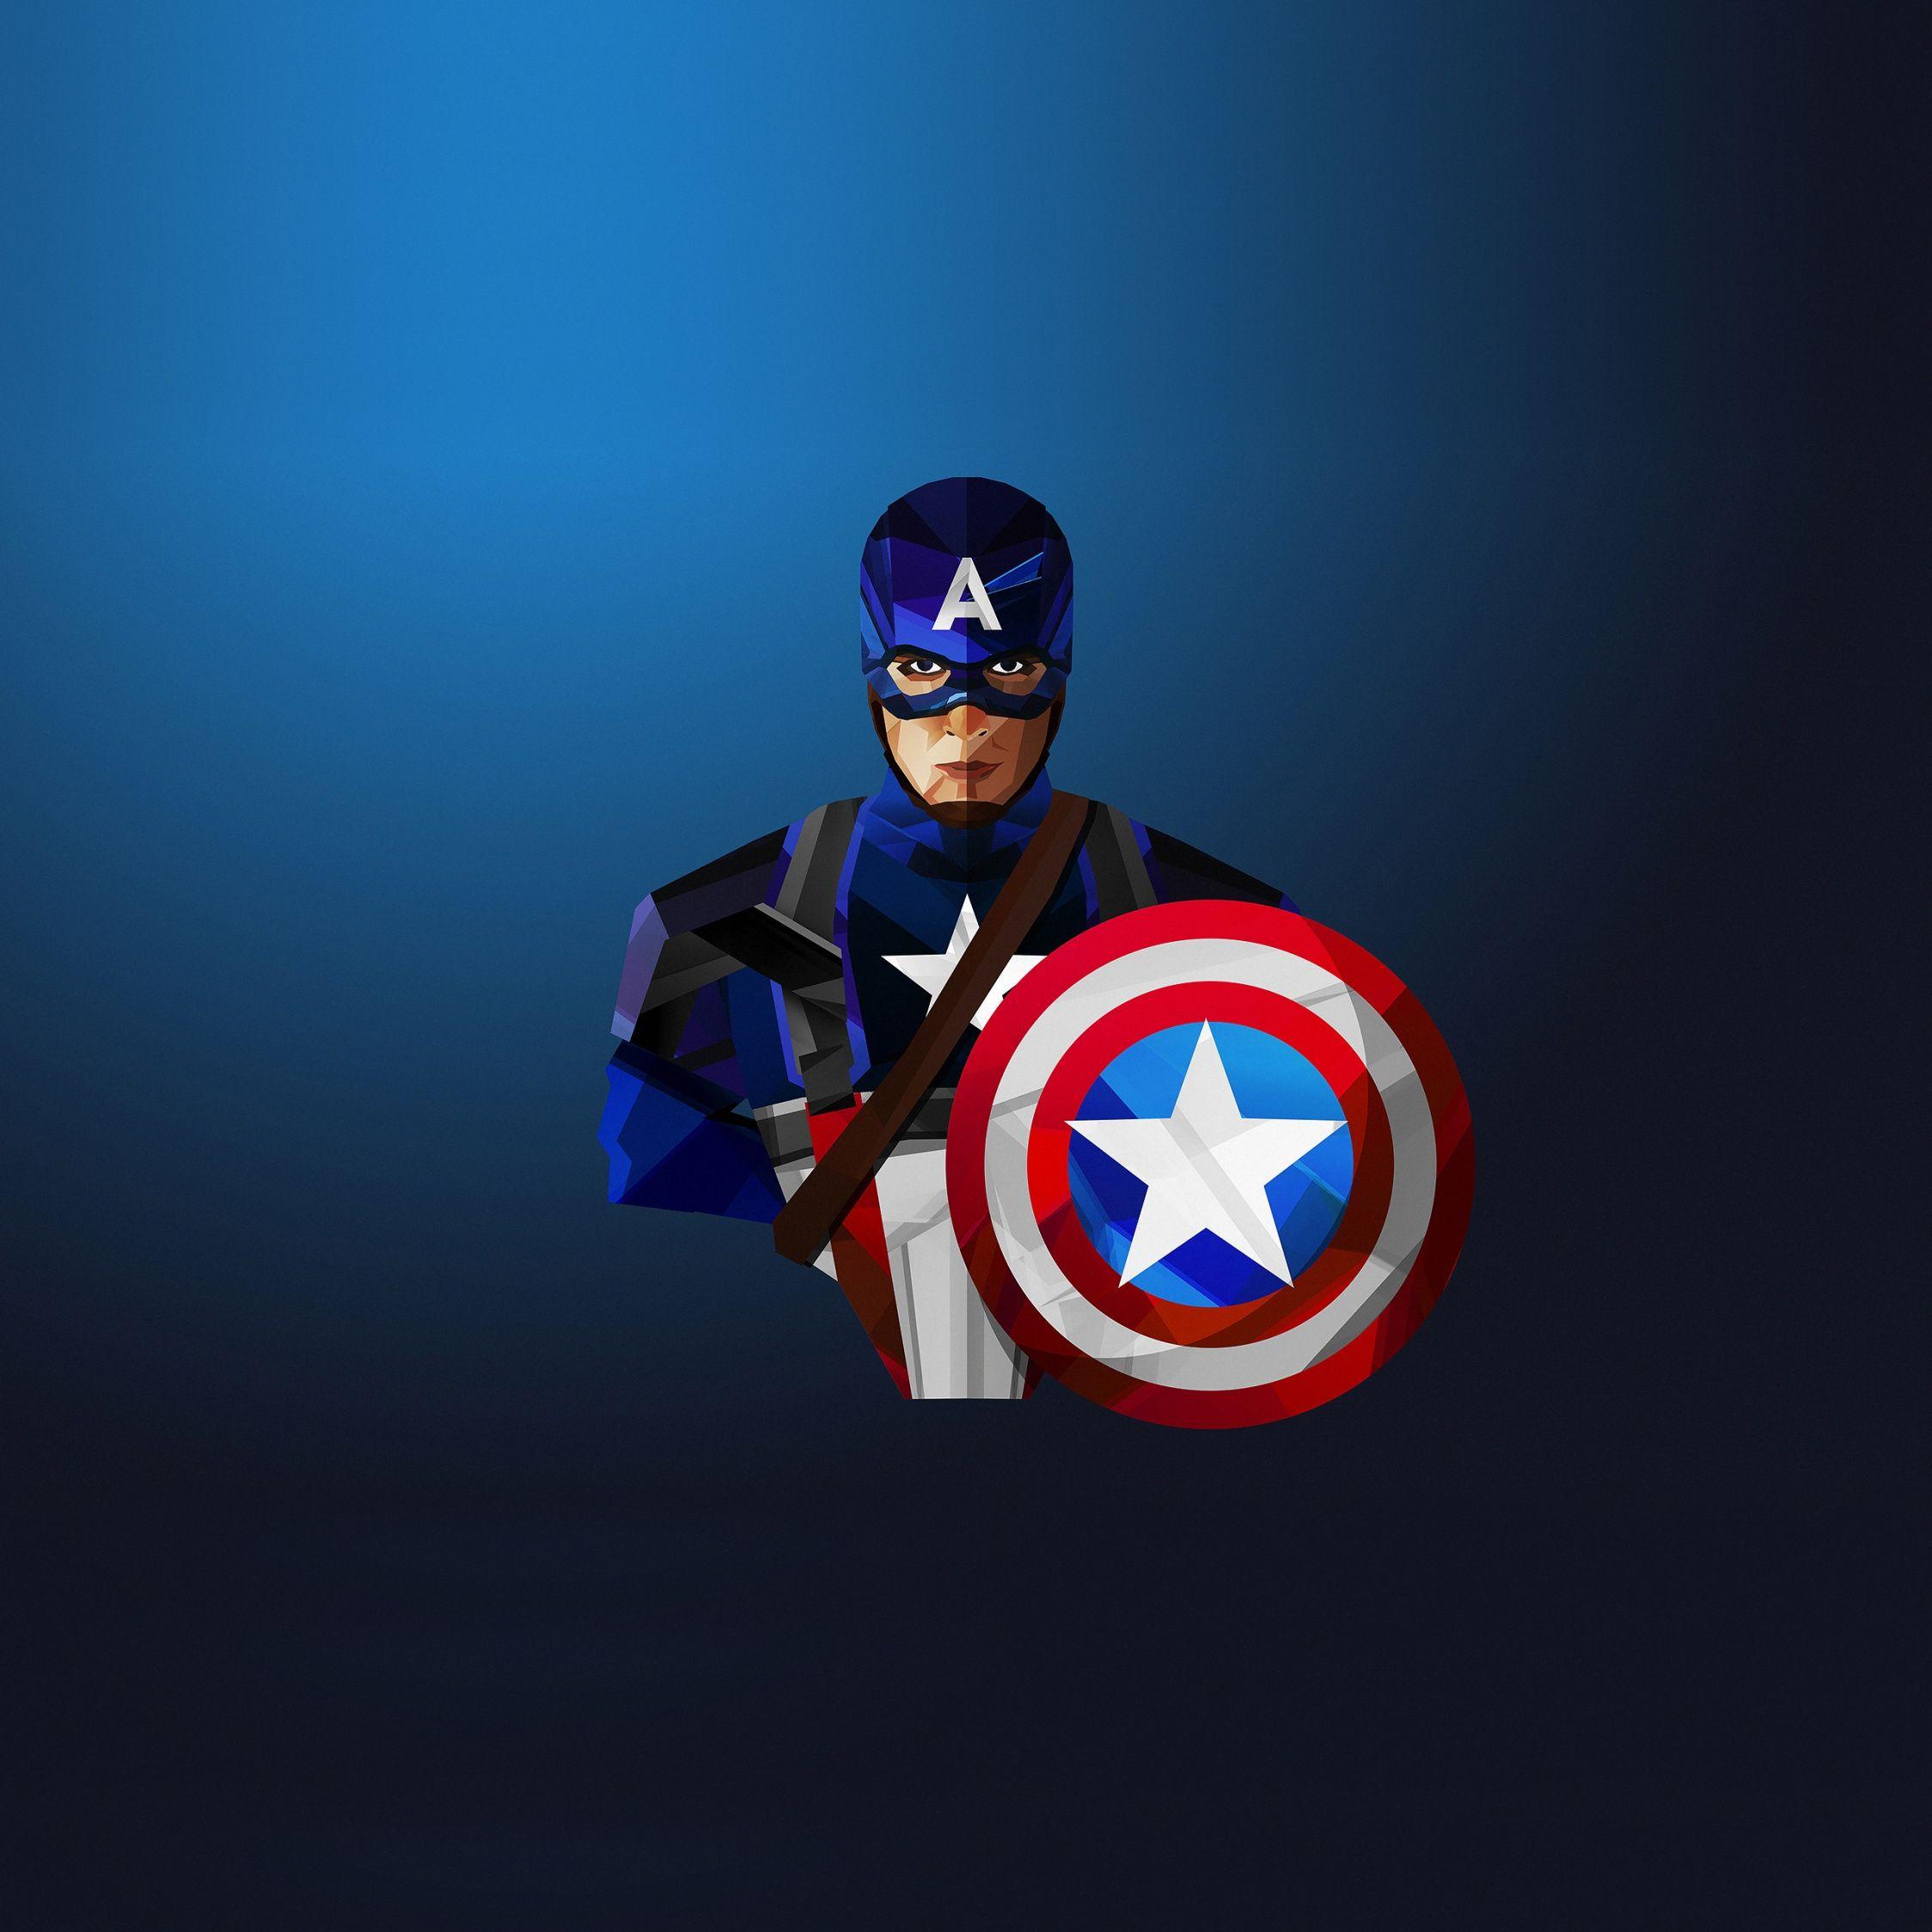 2248x2248 Tải xuống Captain America, siêu anh hùng, hình nền low poly, 2248x2248